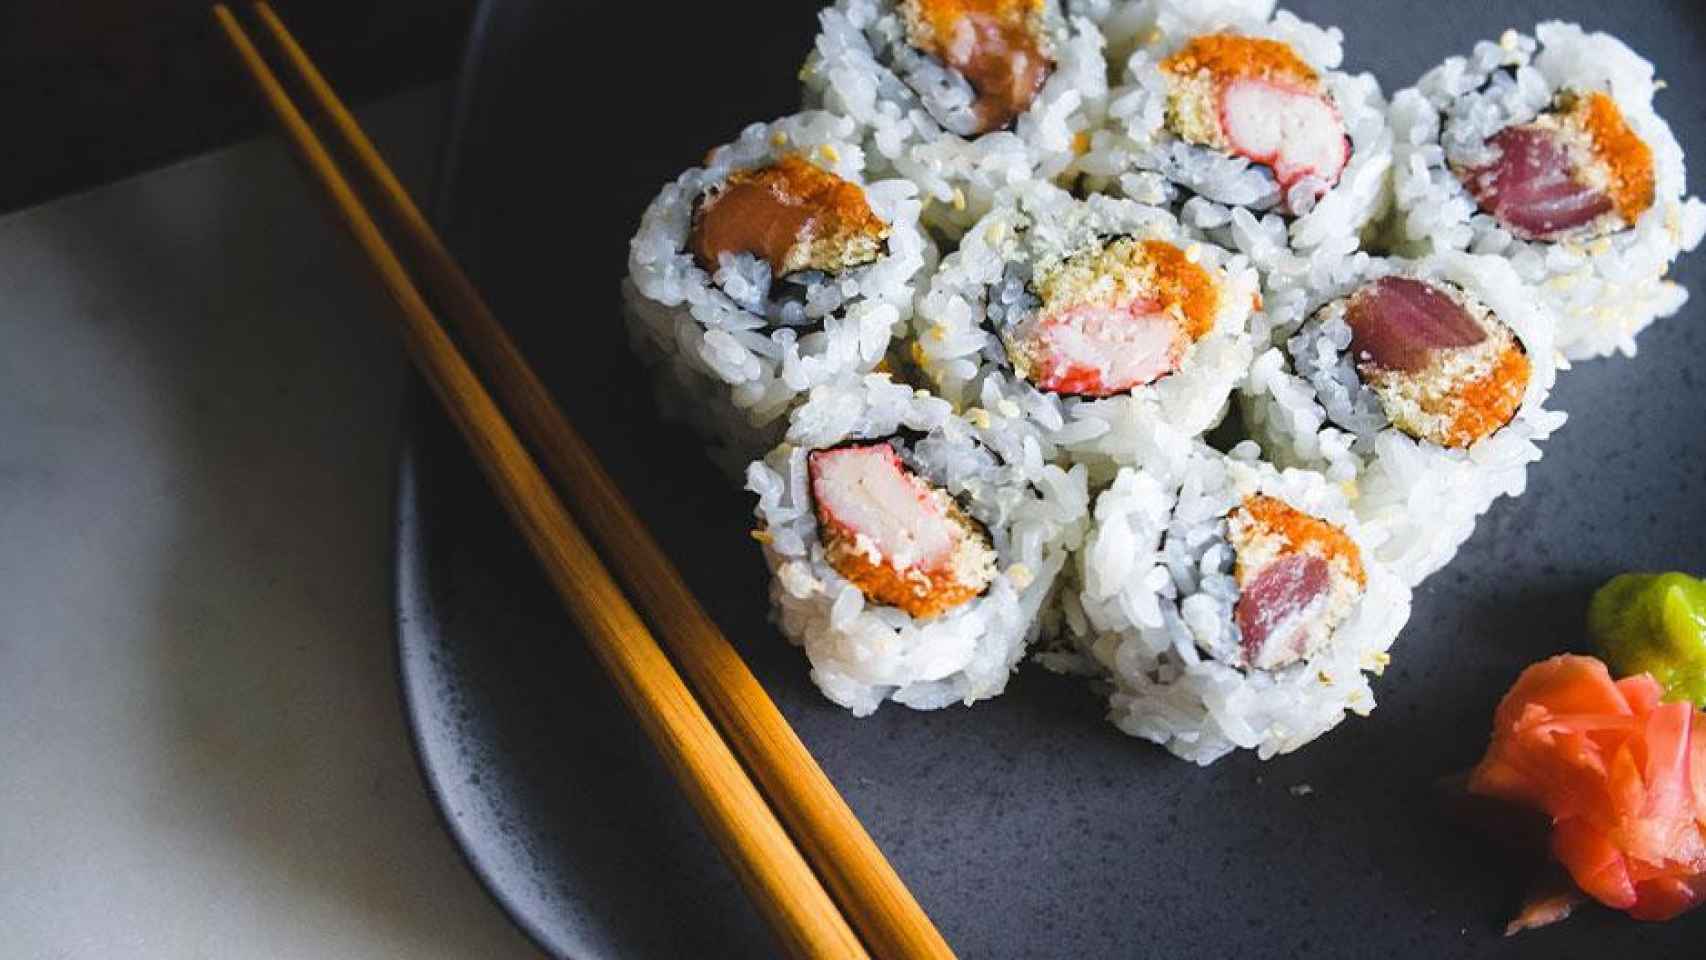 Plato de sushi, comida japonesa por excelencia / UNSPLASH